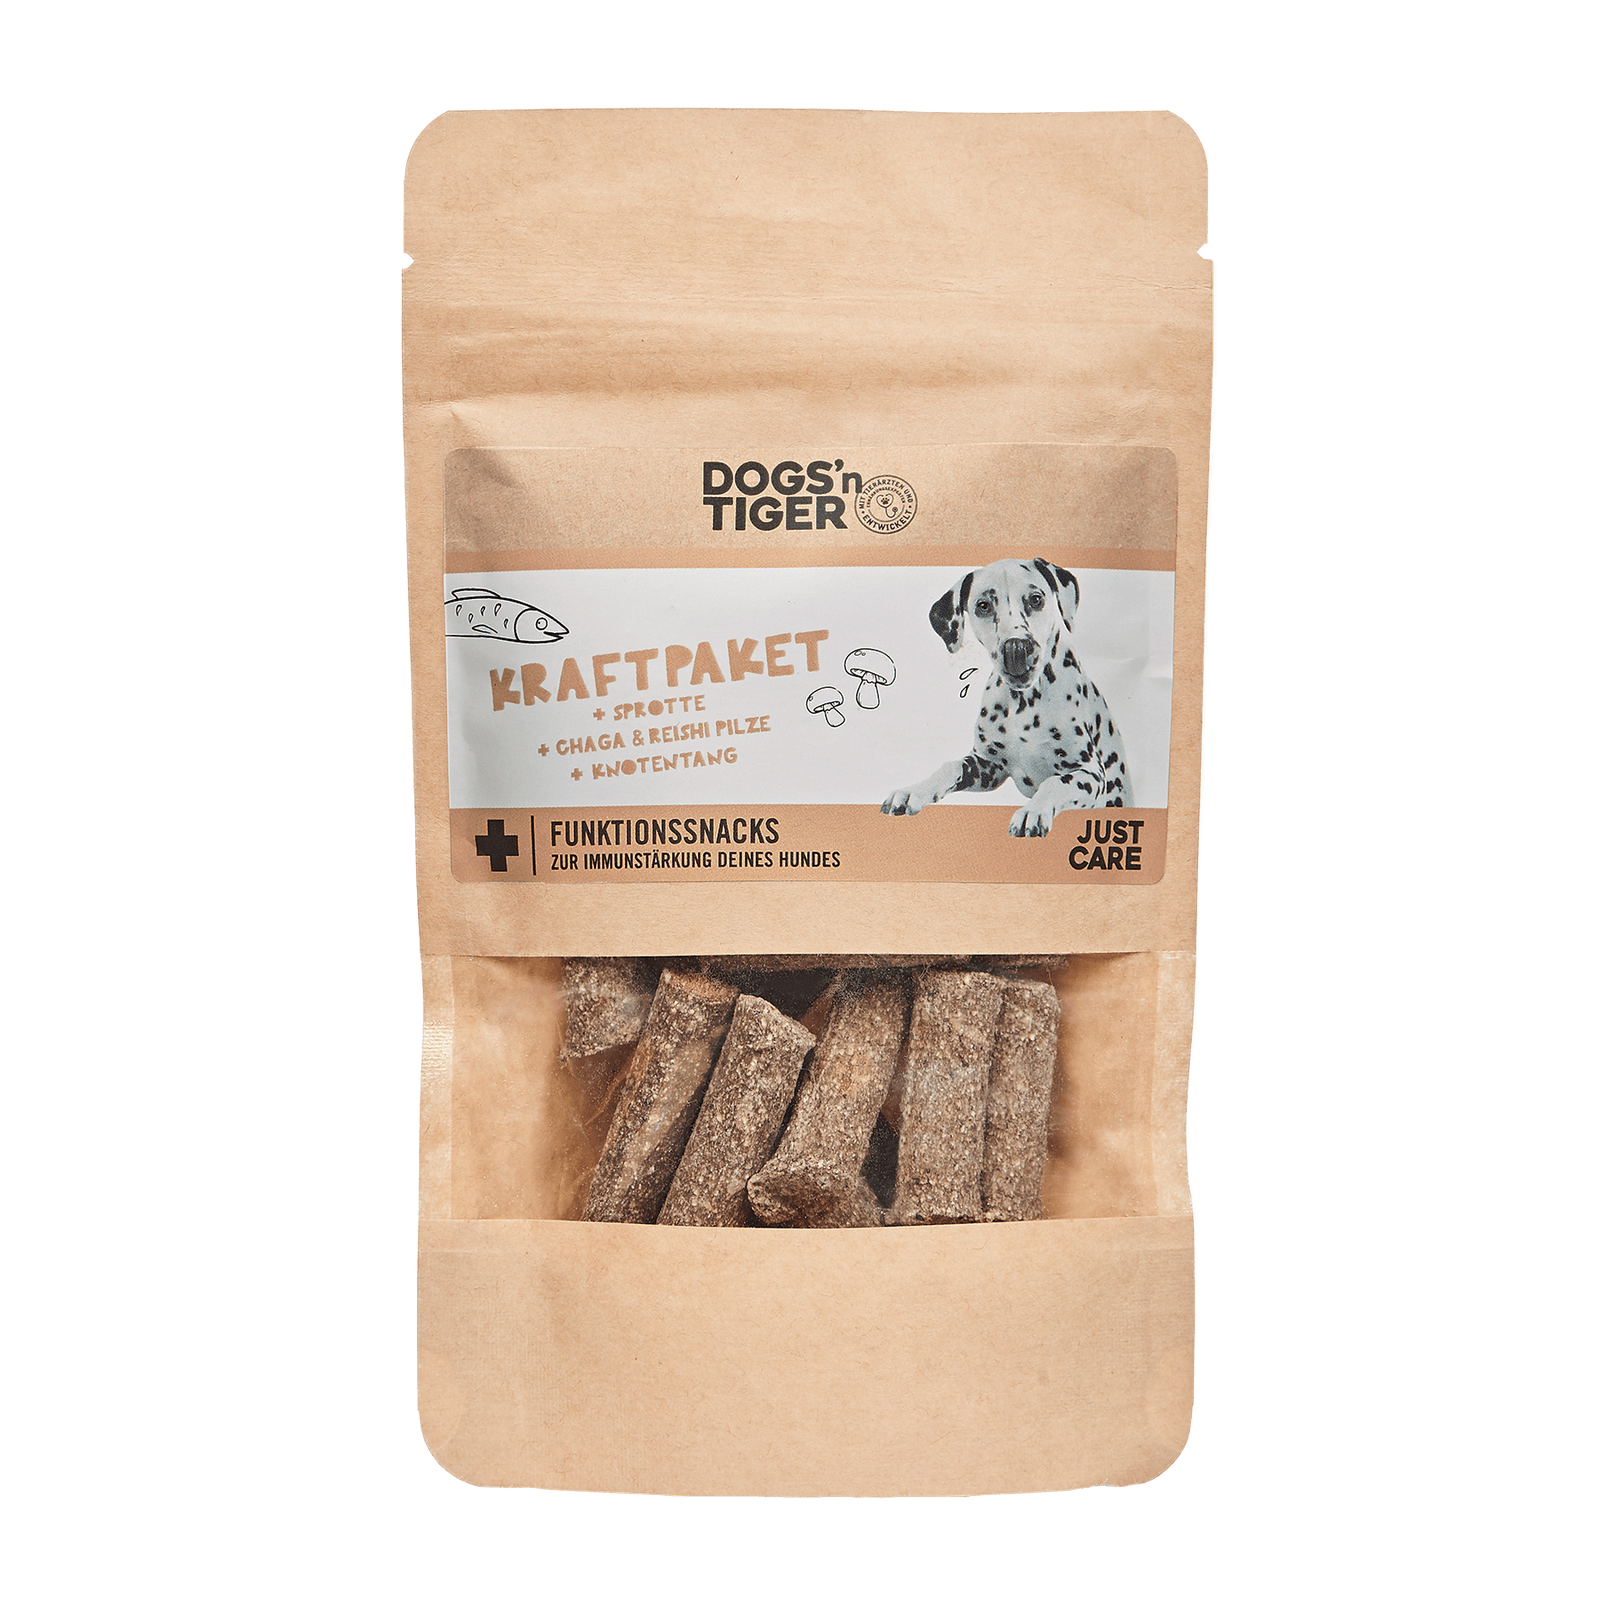 Artikel mit dem Namen Dogs'n Tiger Hund Kraftpaket im Shop von zoo.de , dem Onlineshop für nachhaltiges Hundefutter und Katzenfutter.